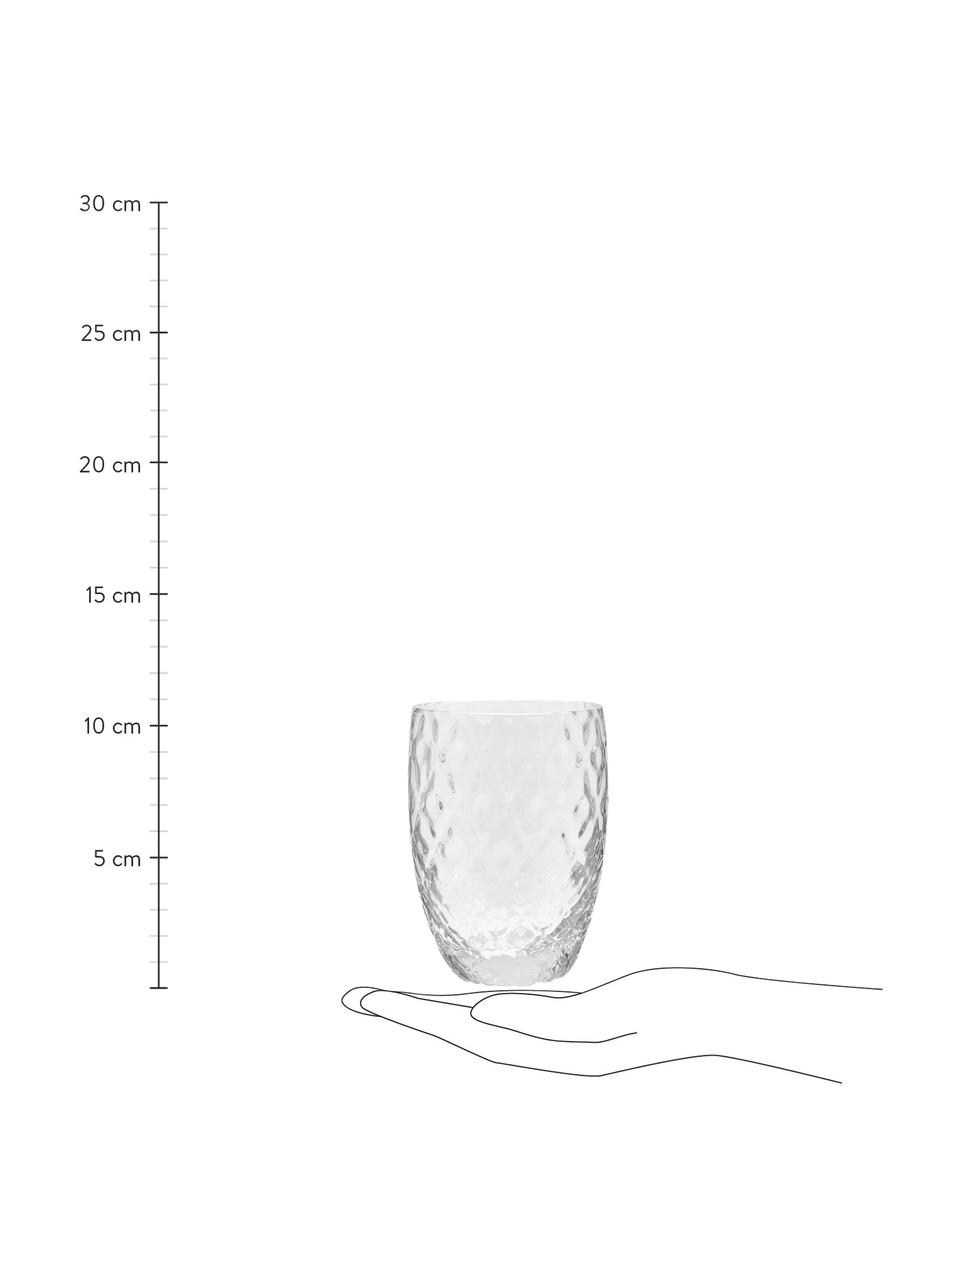 Vasos de vidrio soplado artesanalmente Melting Pot Calm, 6 uds., Vidrio, Transparente, blanco, Ø 7-10 x Al 9-11 cm, 270-440 ml